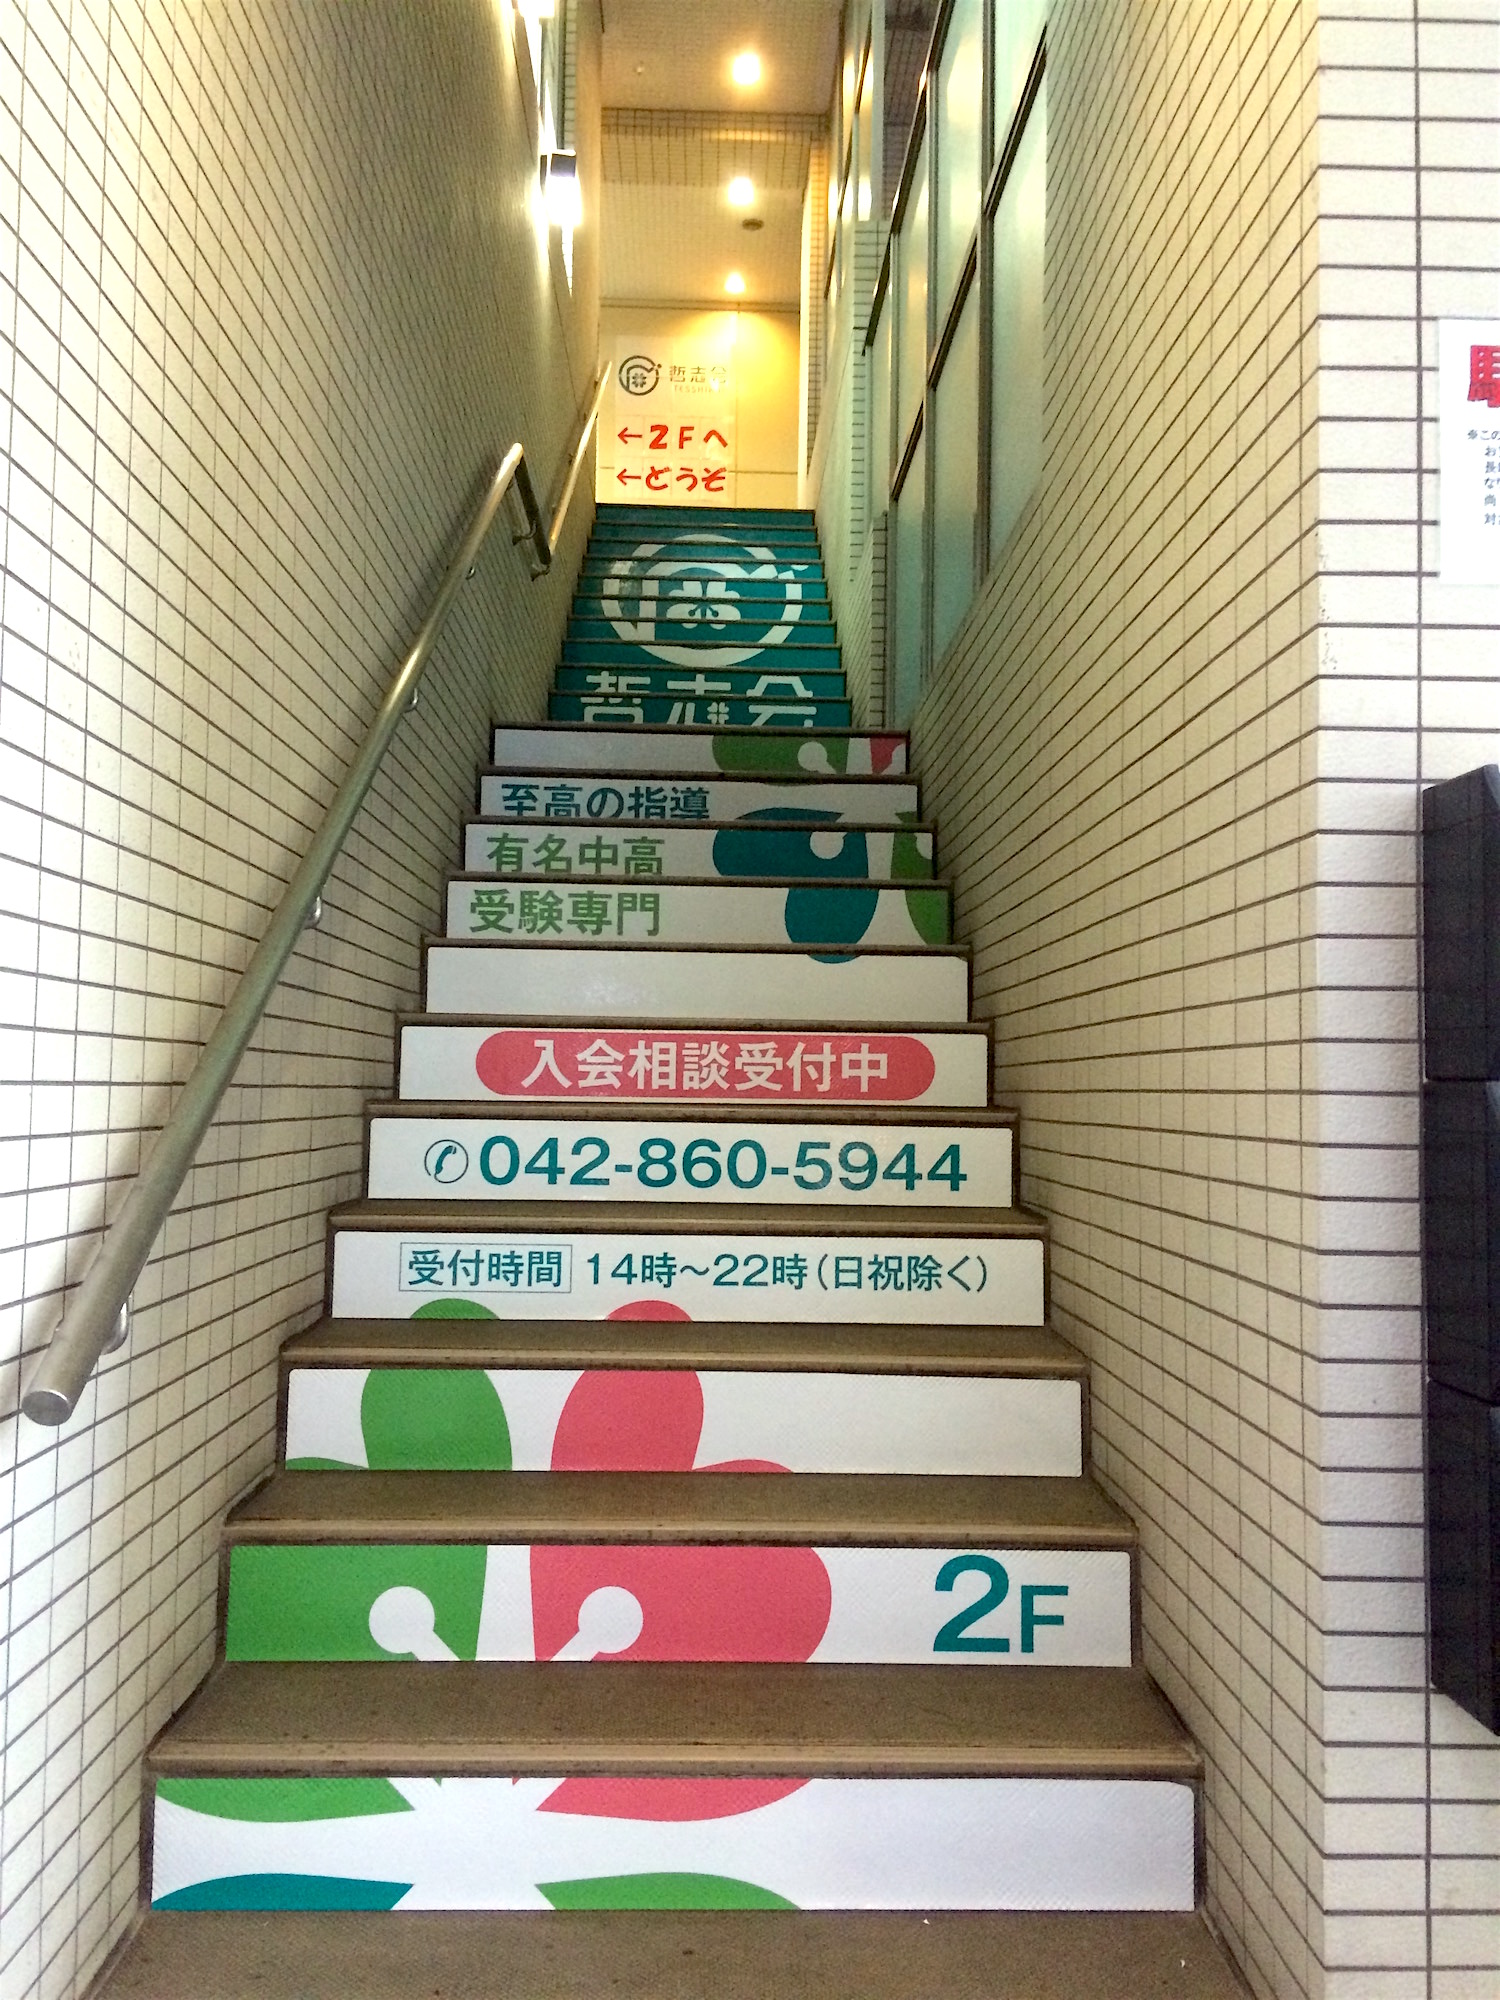 町田市学習塾入り口の階段蹴り込み広告 町田 相模原のリフォーム店